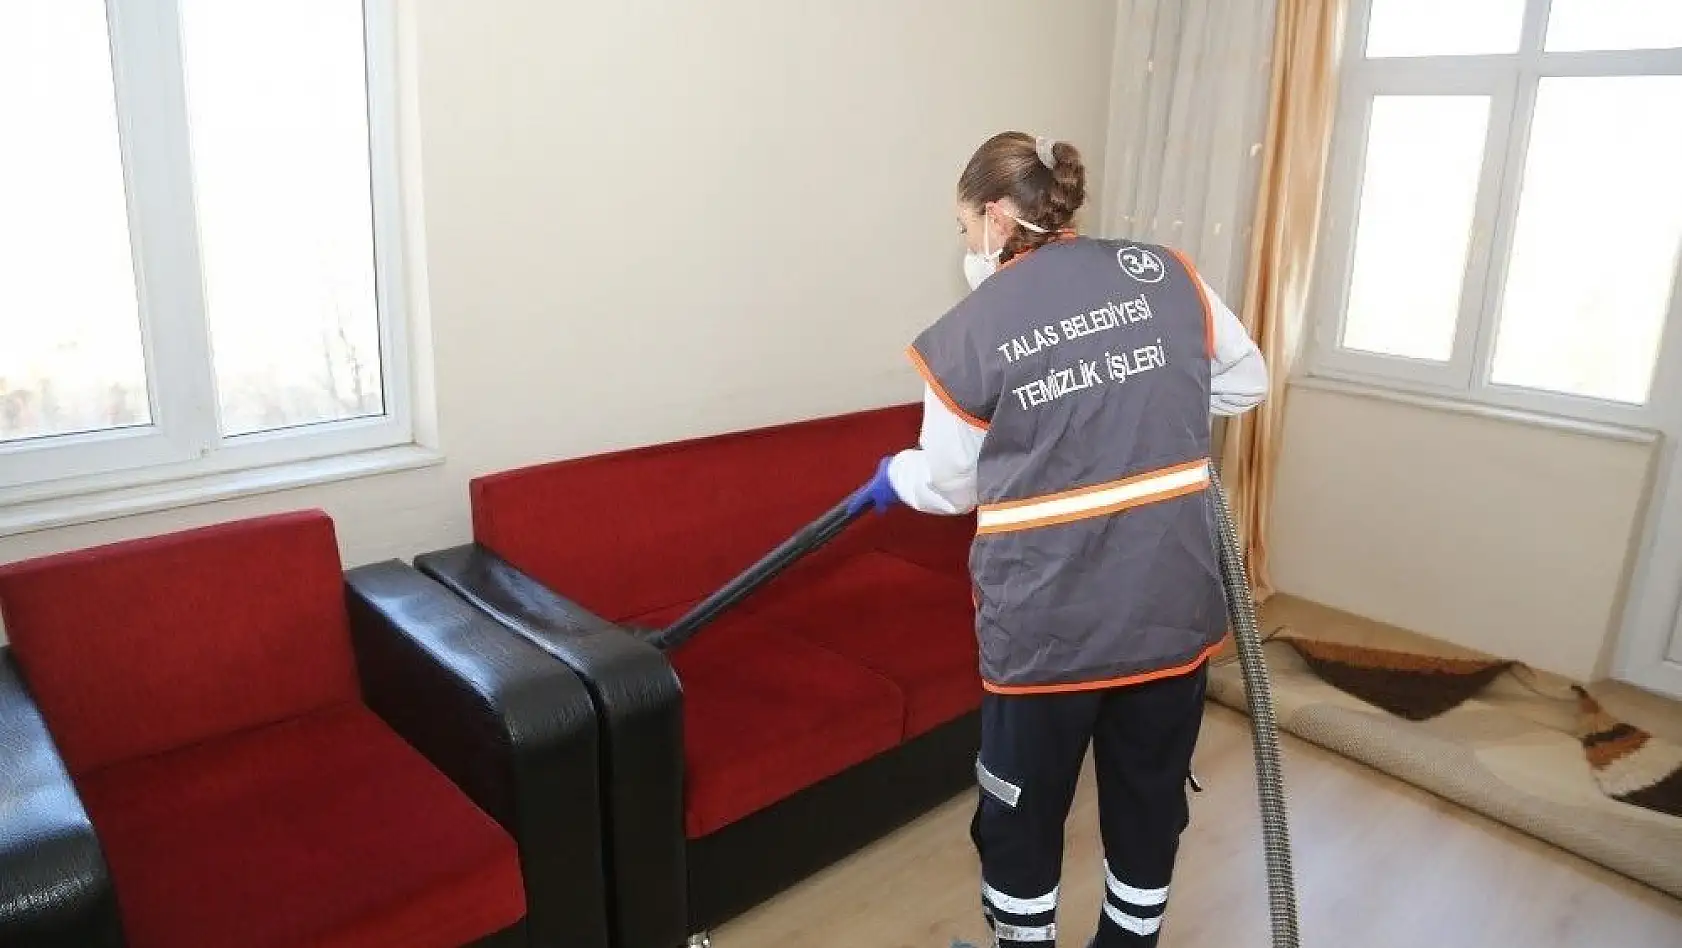 Talas Belediyesi'nden ev temizliği hizmeti
